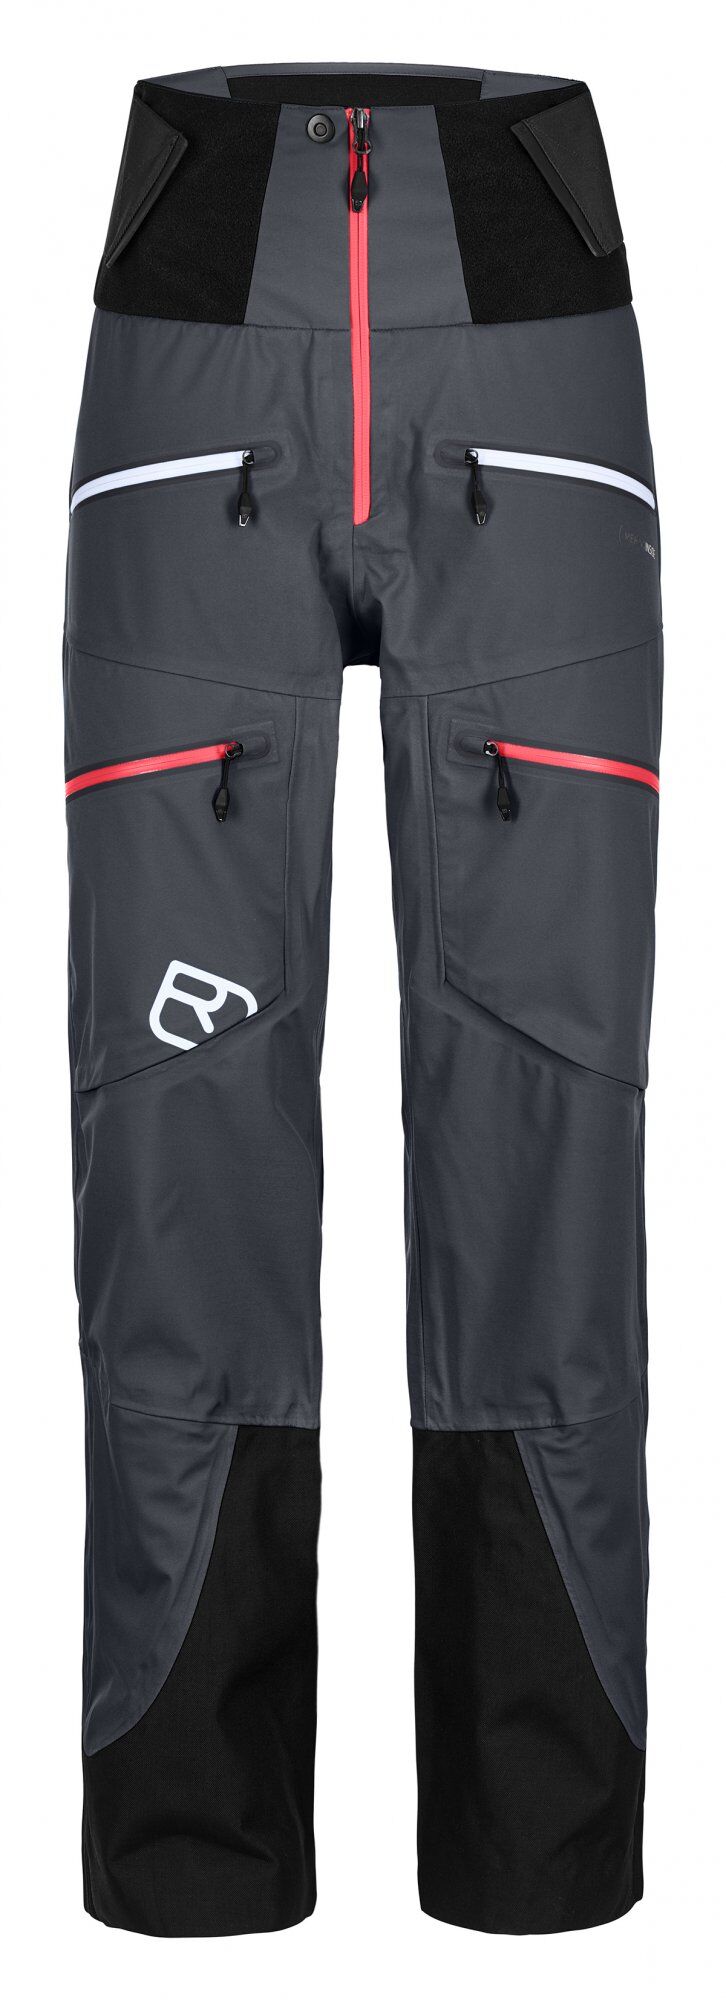 Ortovox - 3L Guardian Shell Pants - Ski pants - Women's